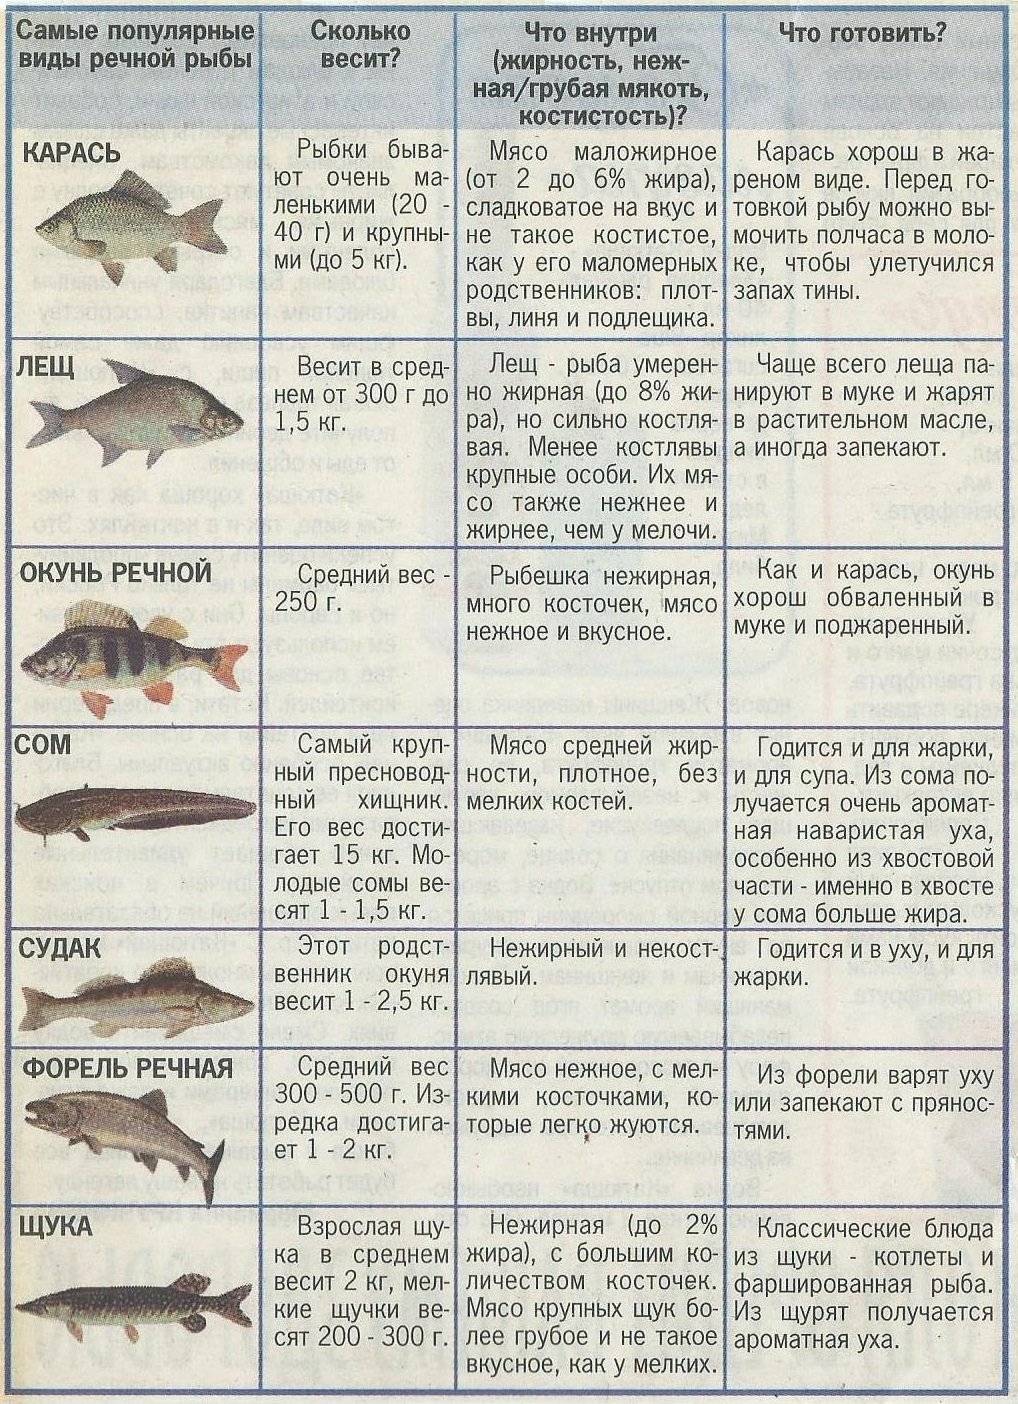 Омега 3: в какой рыбе больше всего полезных жирных кислот